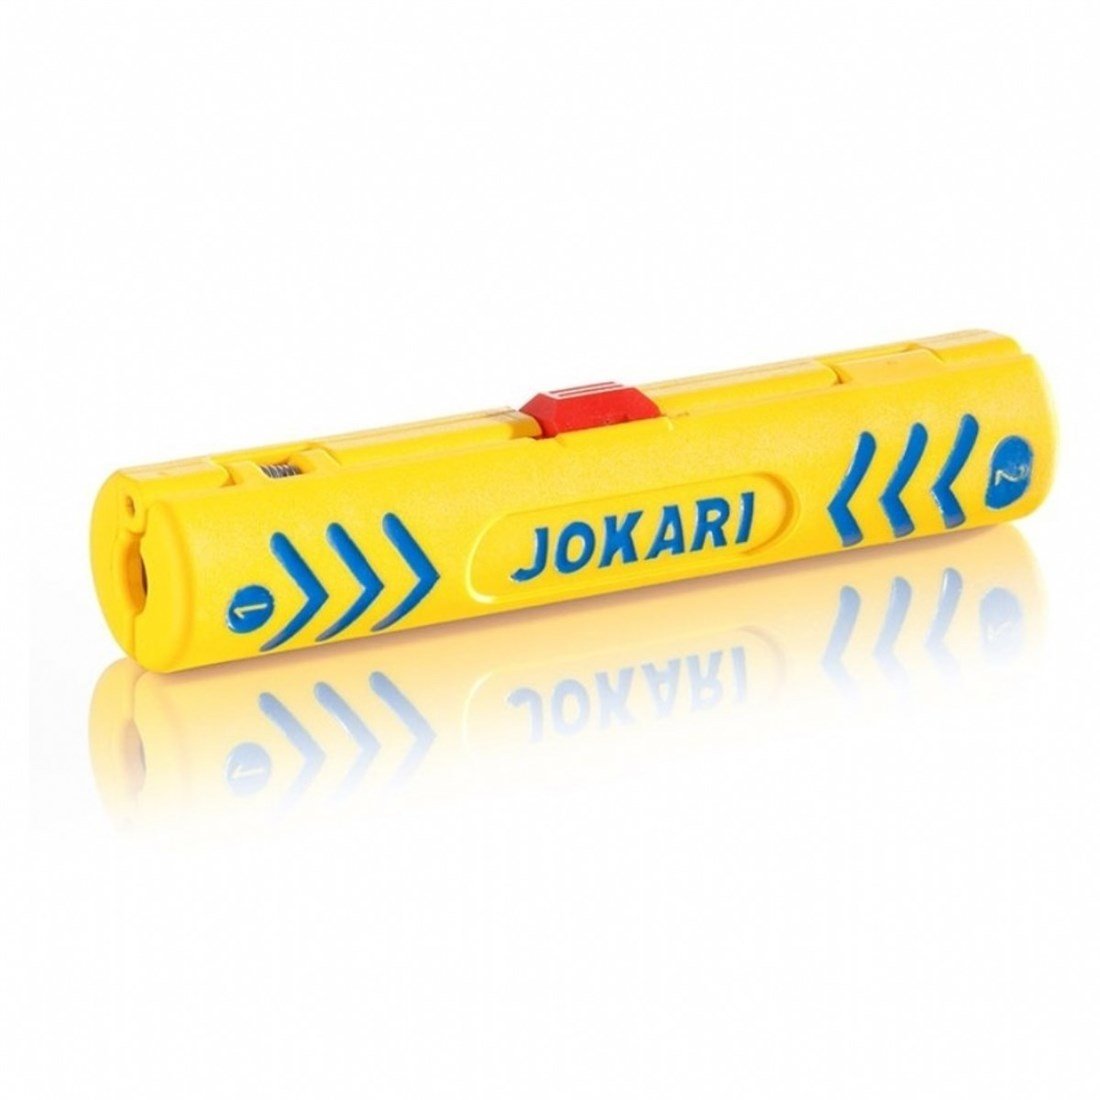 Jokari no1 kablo soyucu 4.8-7.5mm Fiyatları | Karaköy Depo